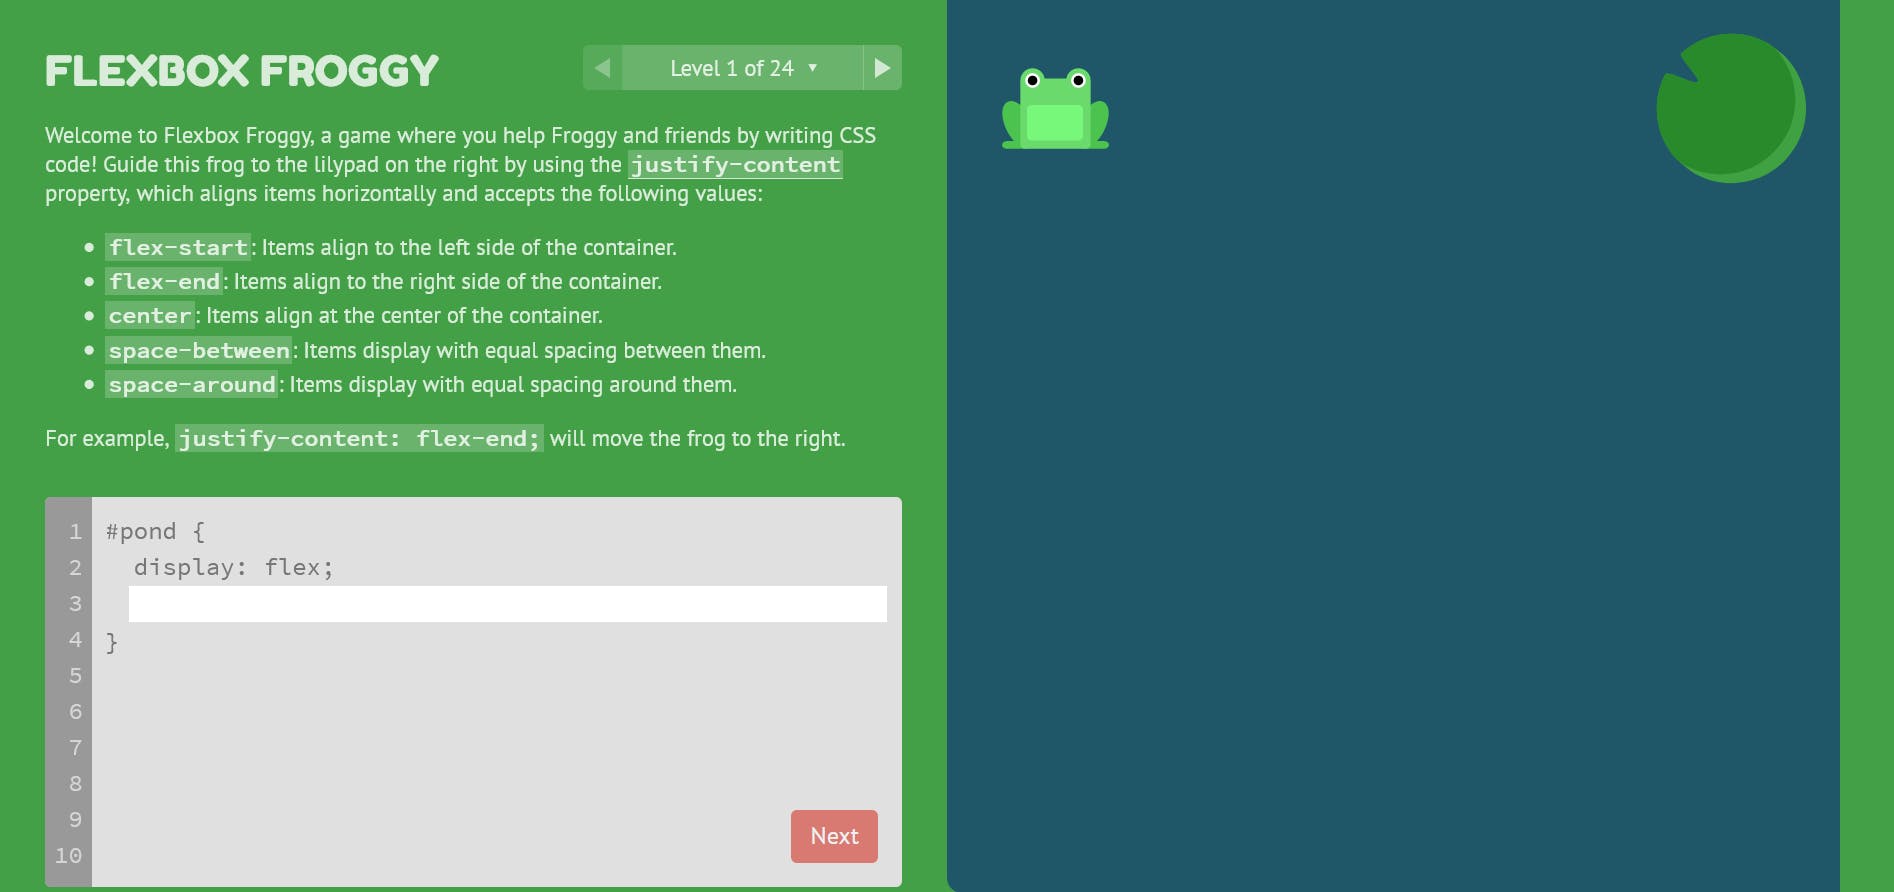 Screenshot 2021-05-07 at 11-20-58 Flexbox Froggy.png